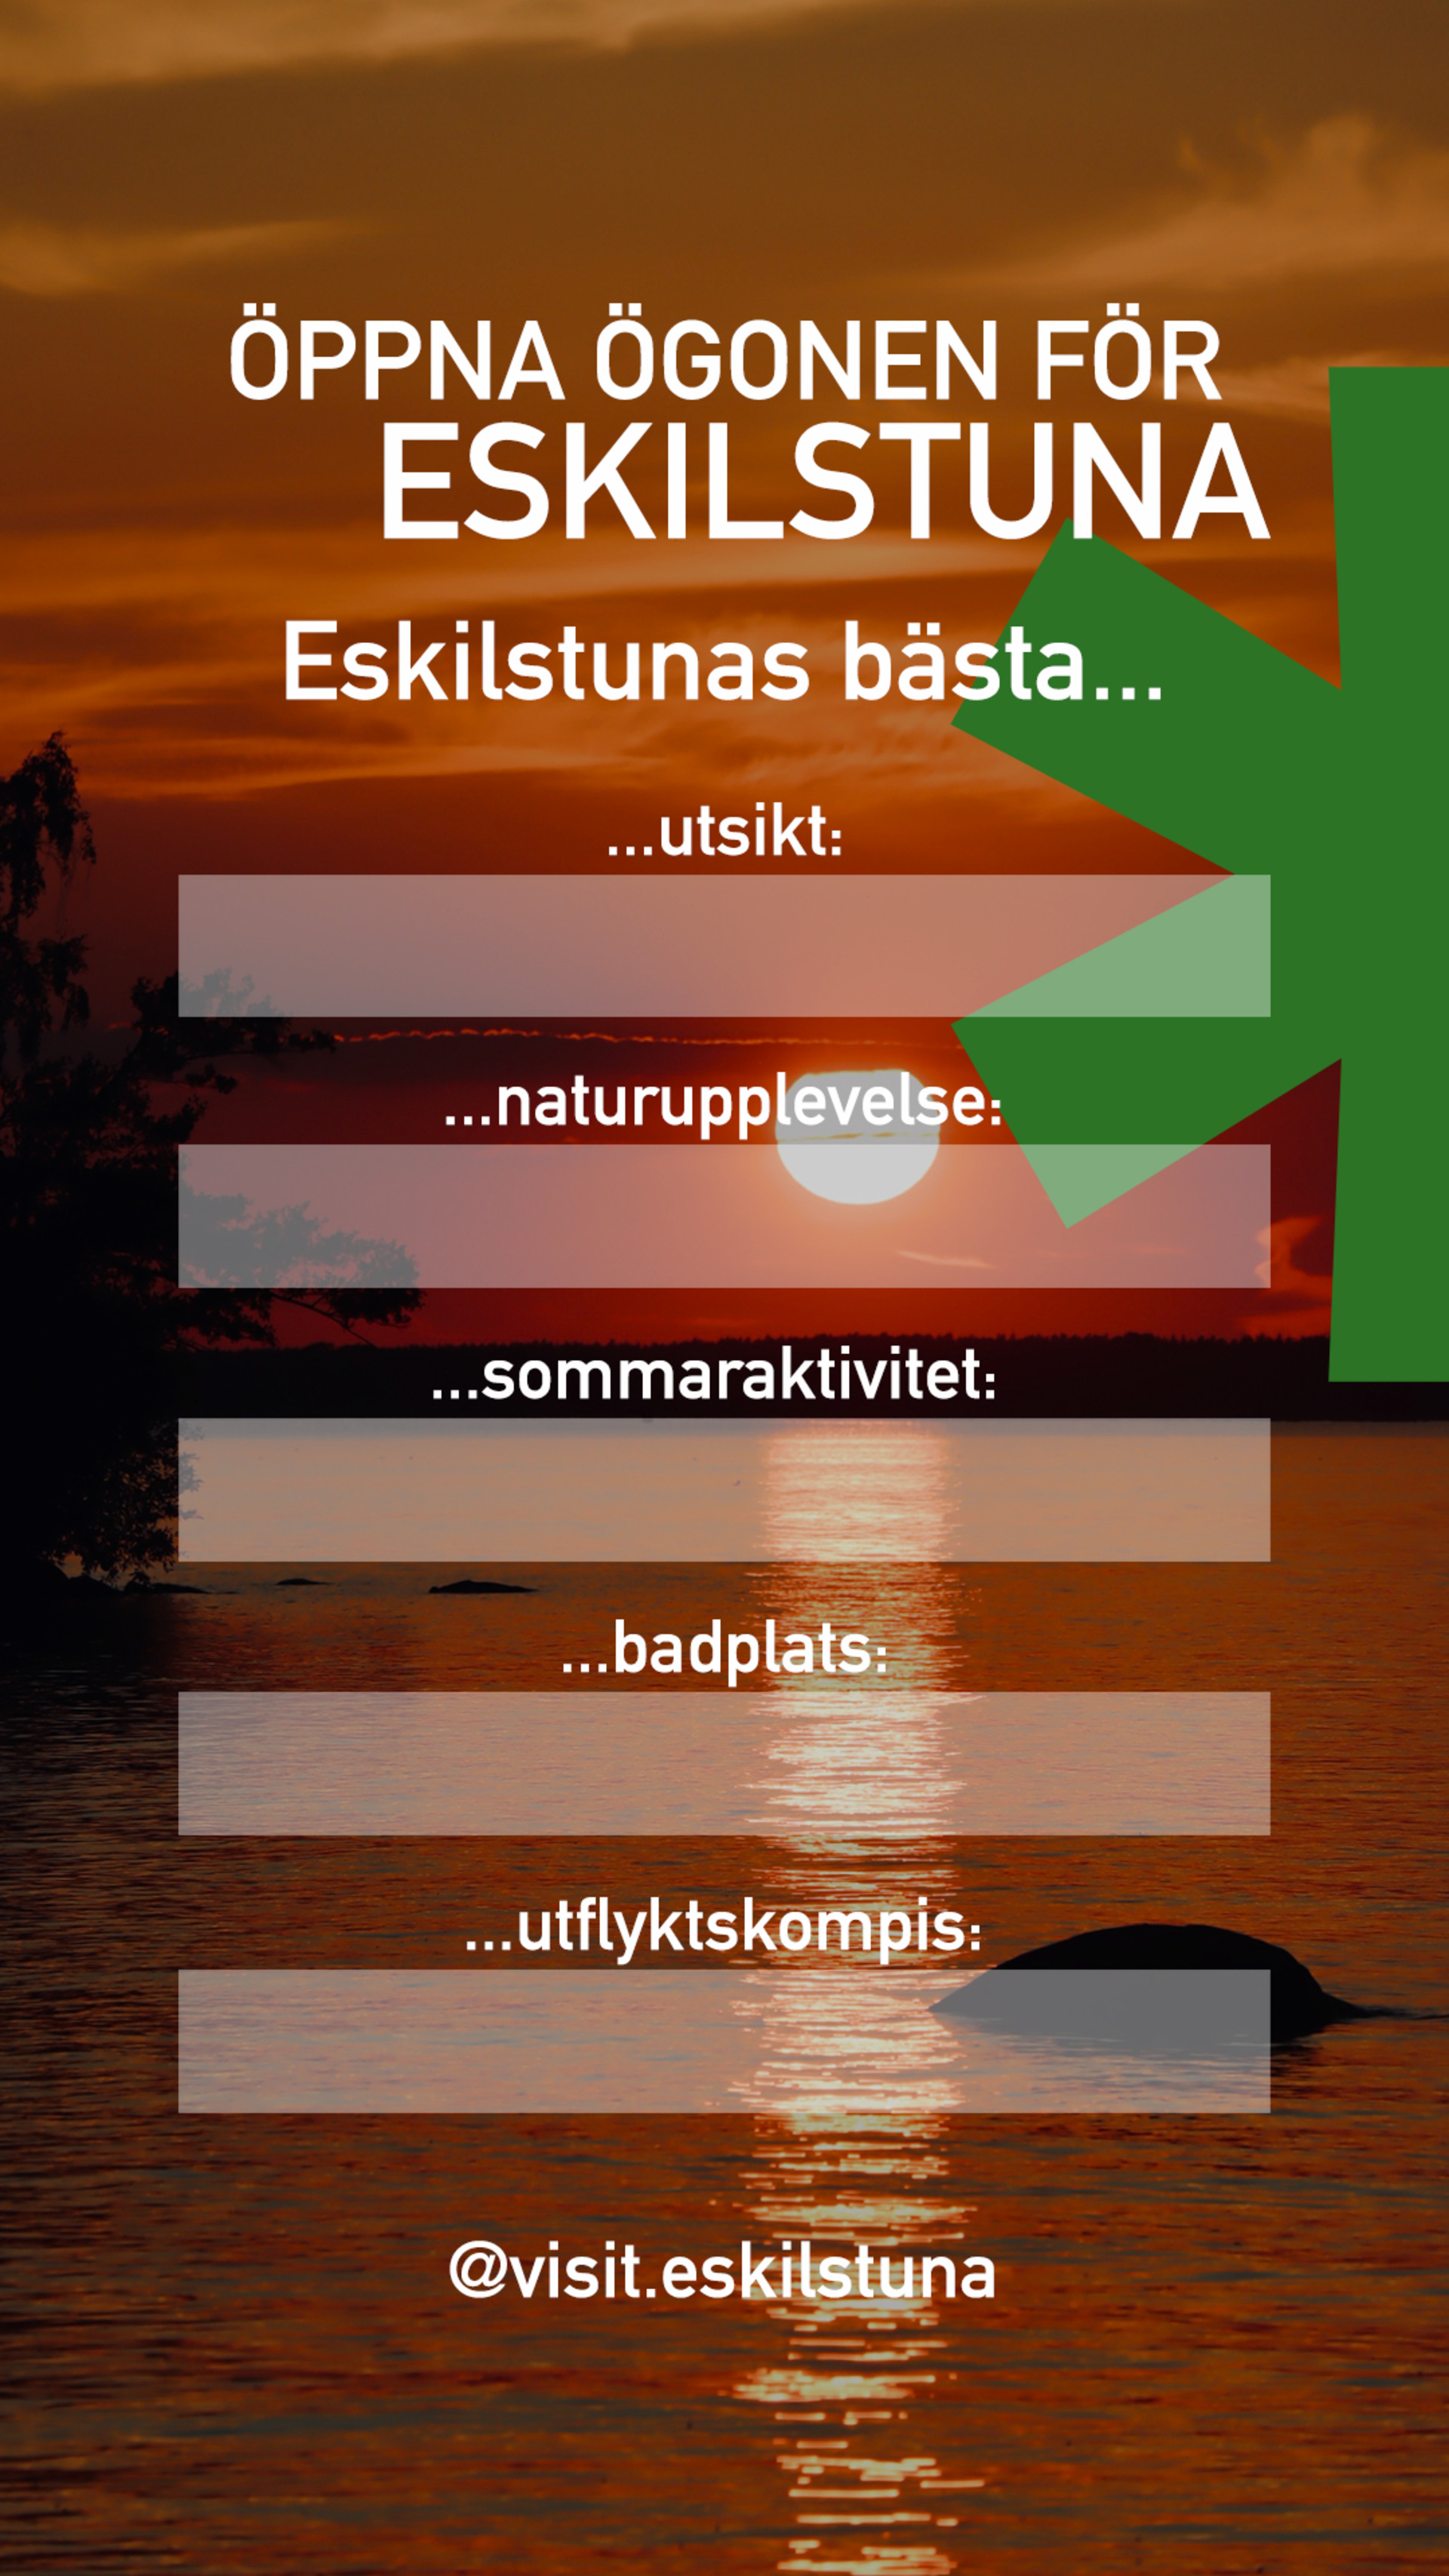 "Öppna ögonen för Eskilstuna" som rubrik. Sedan små gråa fält där man själv kan fylla i bästa utsikt, naturupplevelse, sommaraktivitet och badplats.